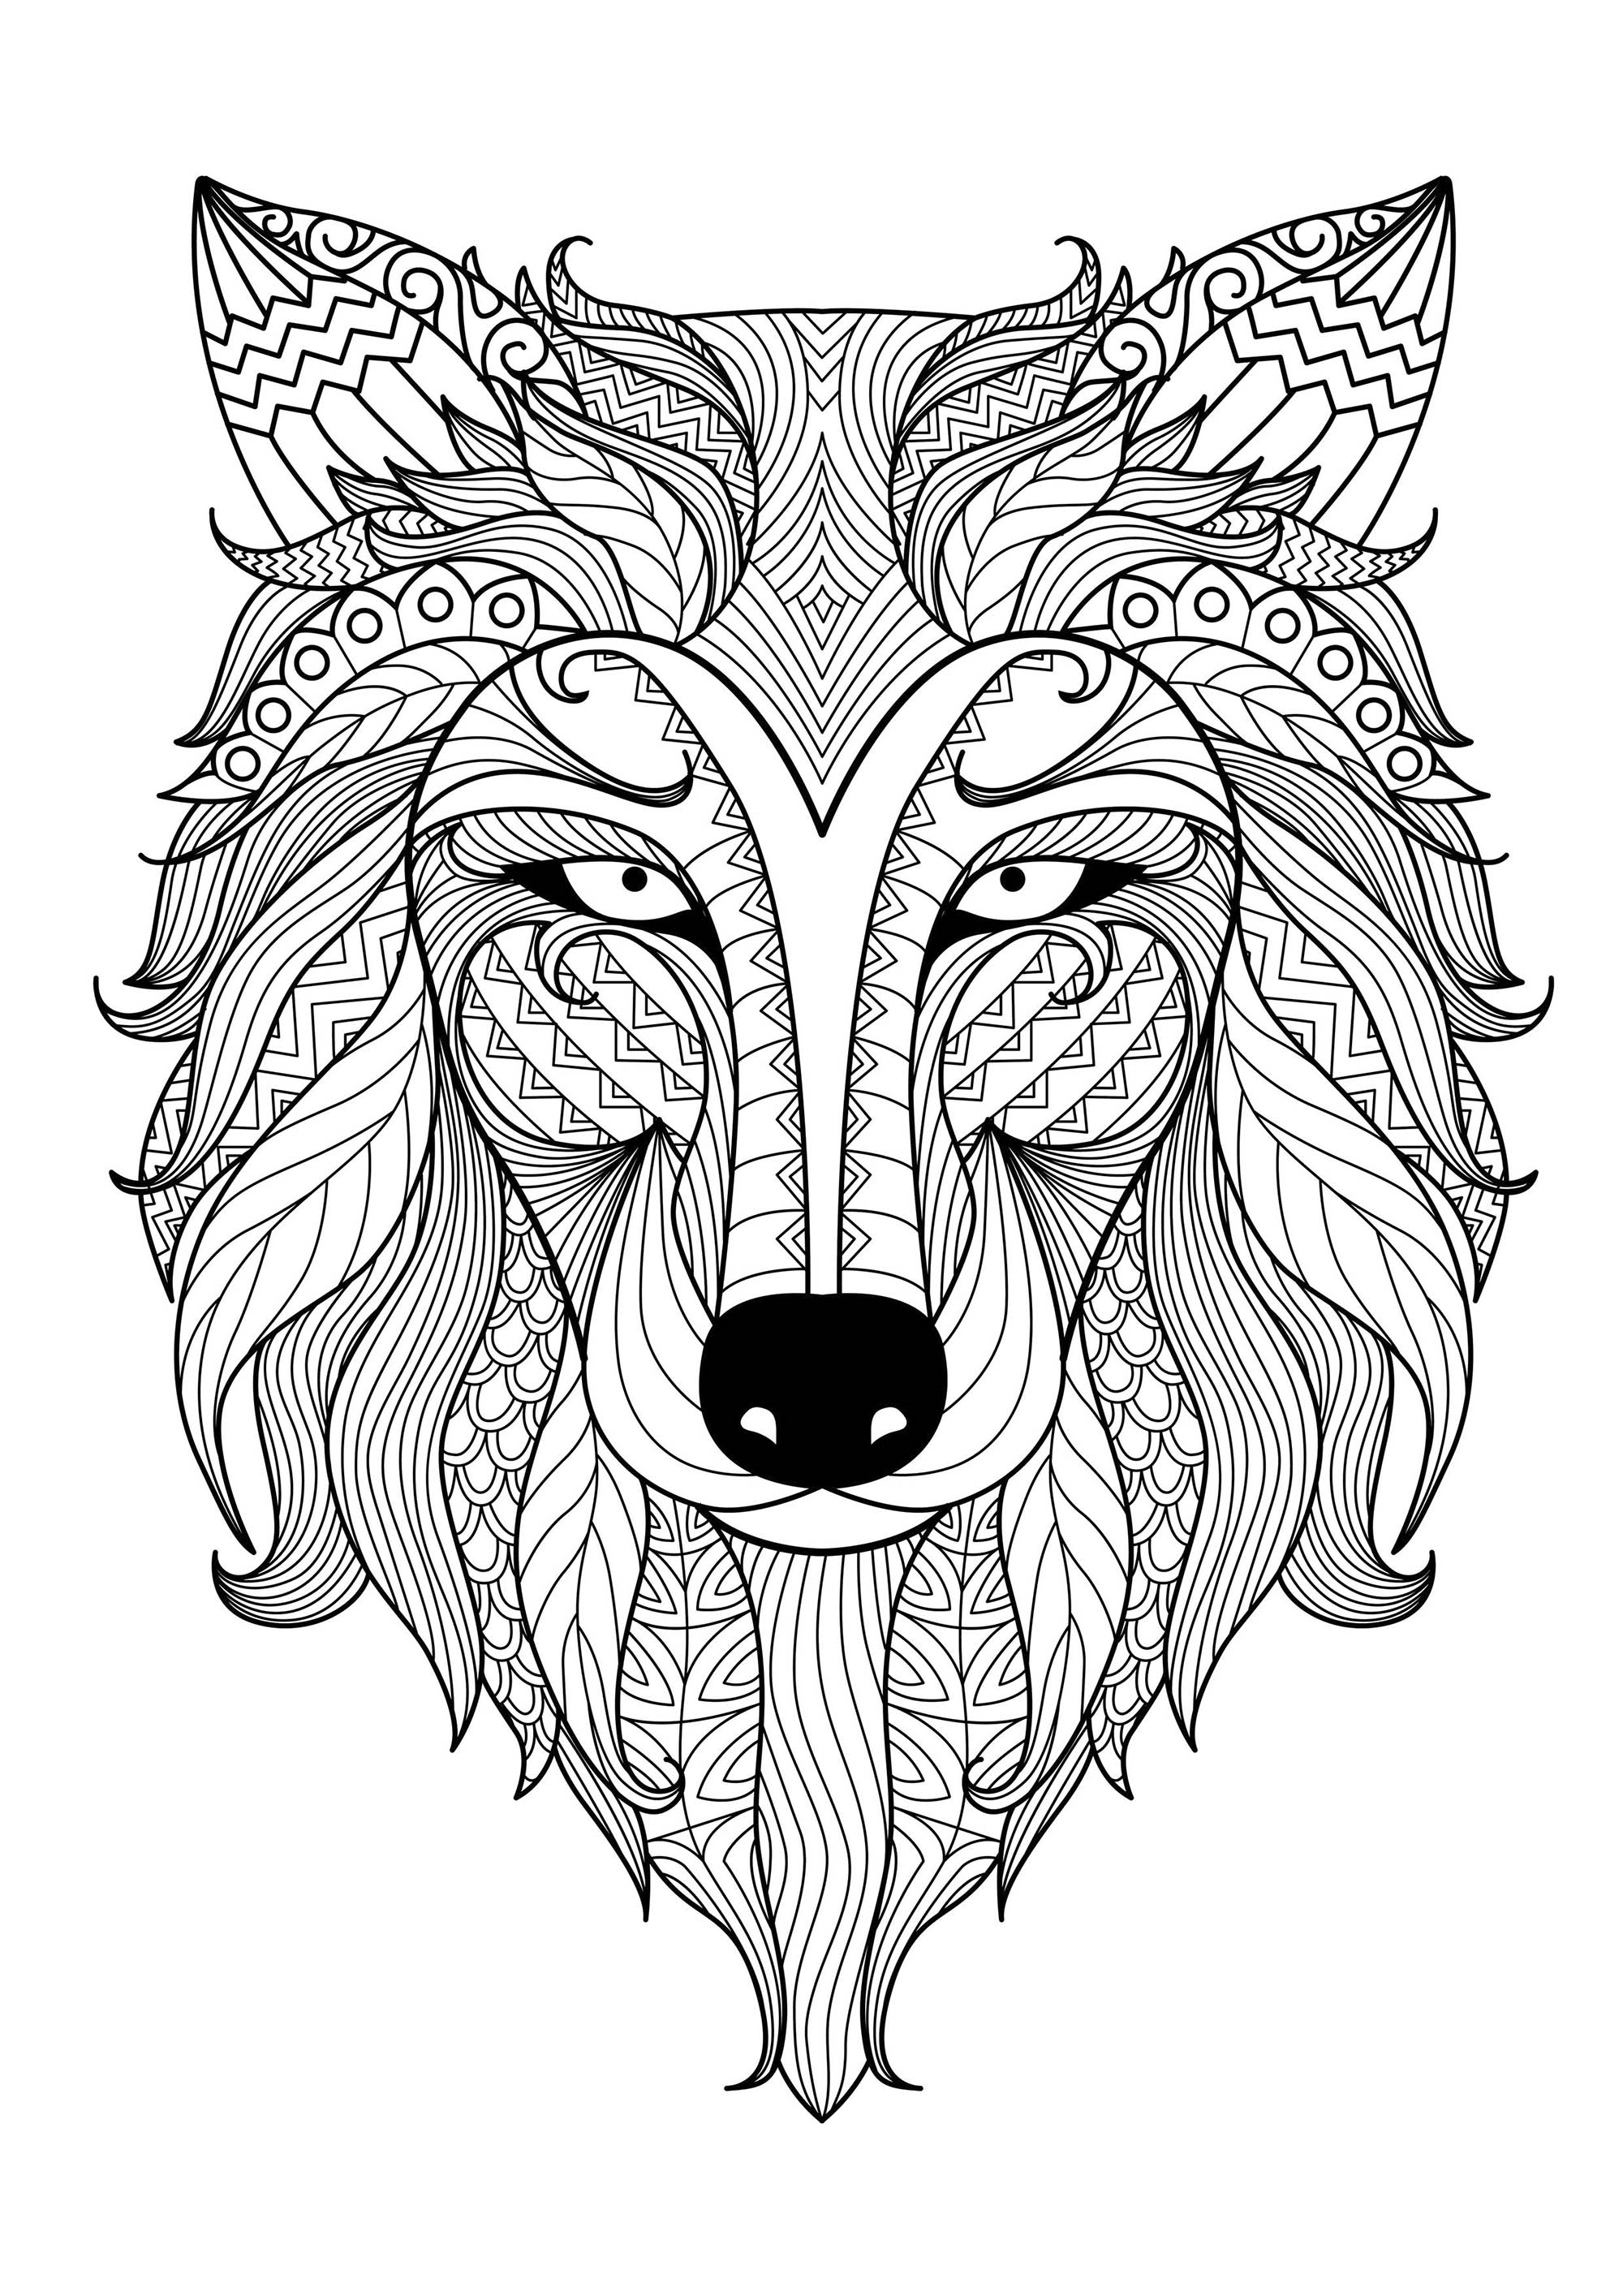 Un lobo increíble y sus muchos detalles. Esta página para colorear es realmente excepcional. Representa la cabeza de un lobo con muchos detalles variados y abstractos, Artista : Bimdeedee   Origen : 123rf